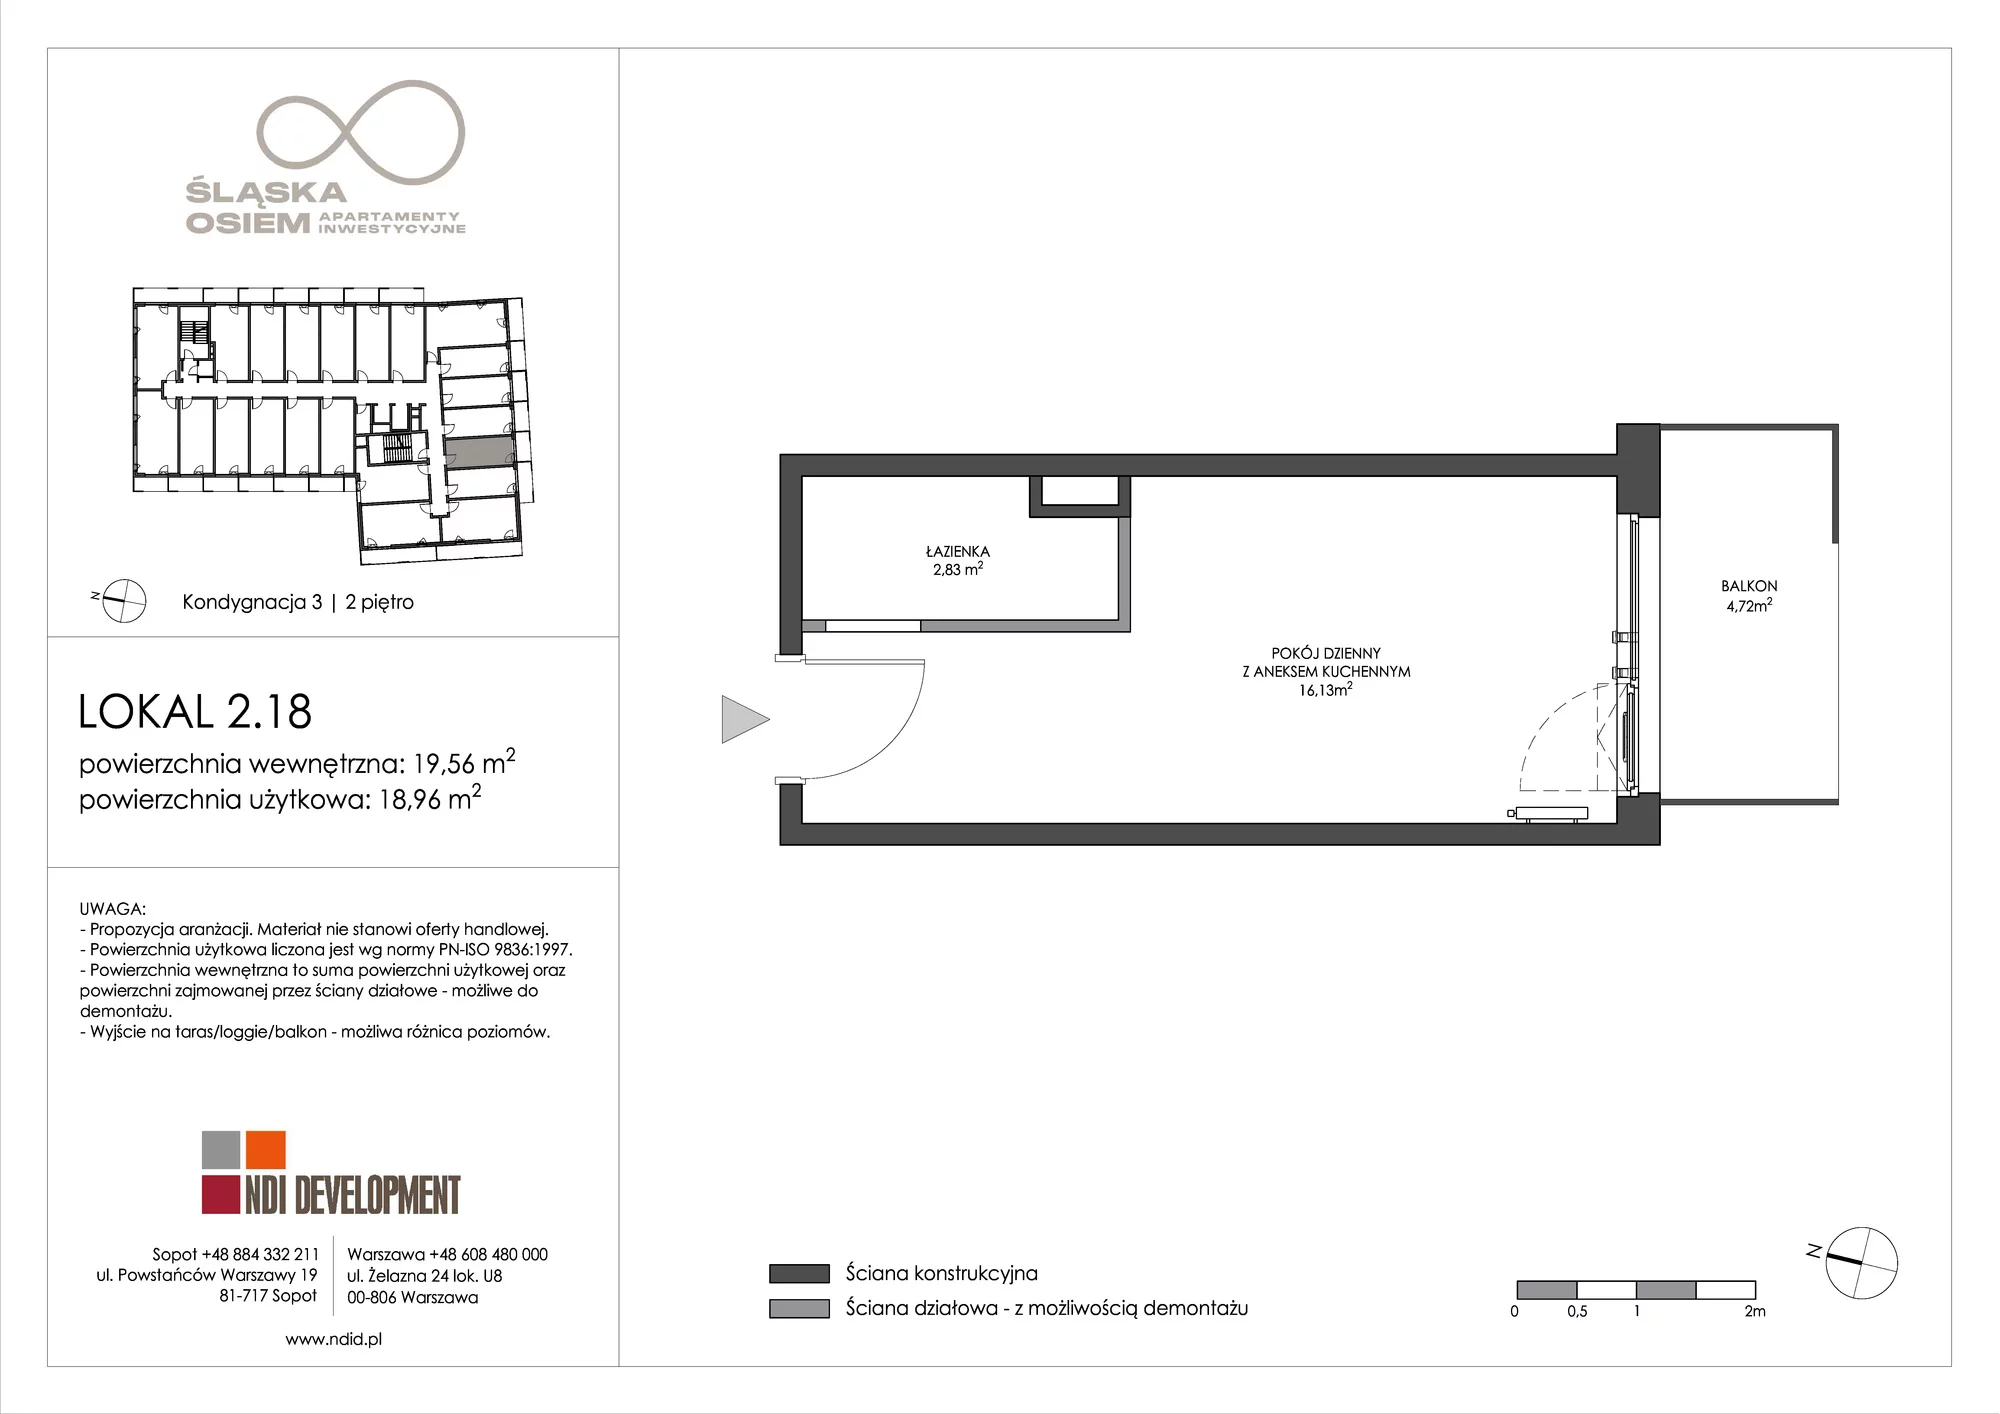 Apartament inwestycyjny 19,56 m², piętro 2, oferta nr 2.18, Śląska Osiem, Gdańsk, Przymorze, ul. Śląska 8